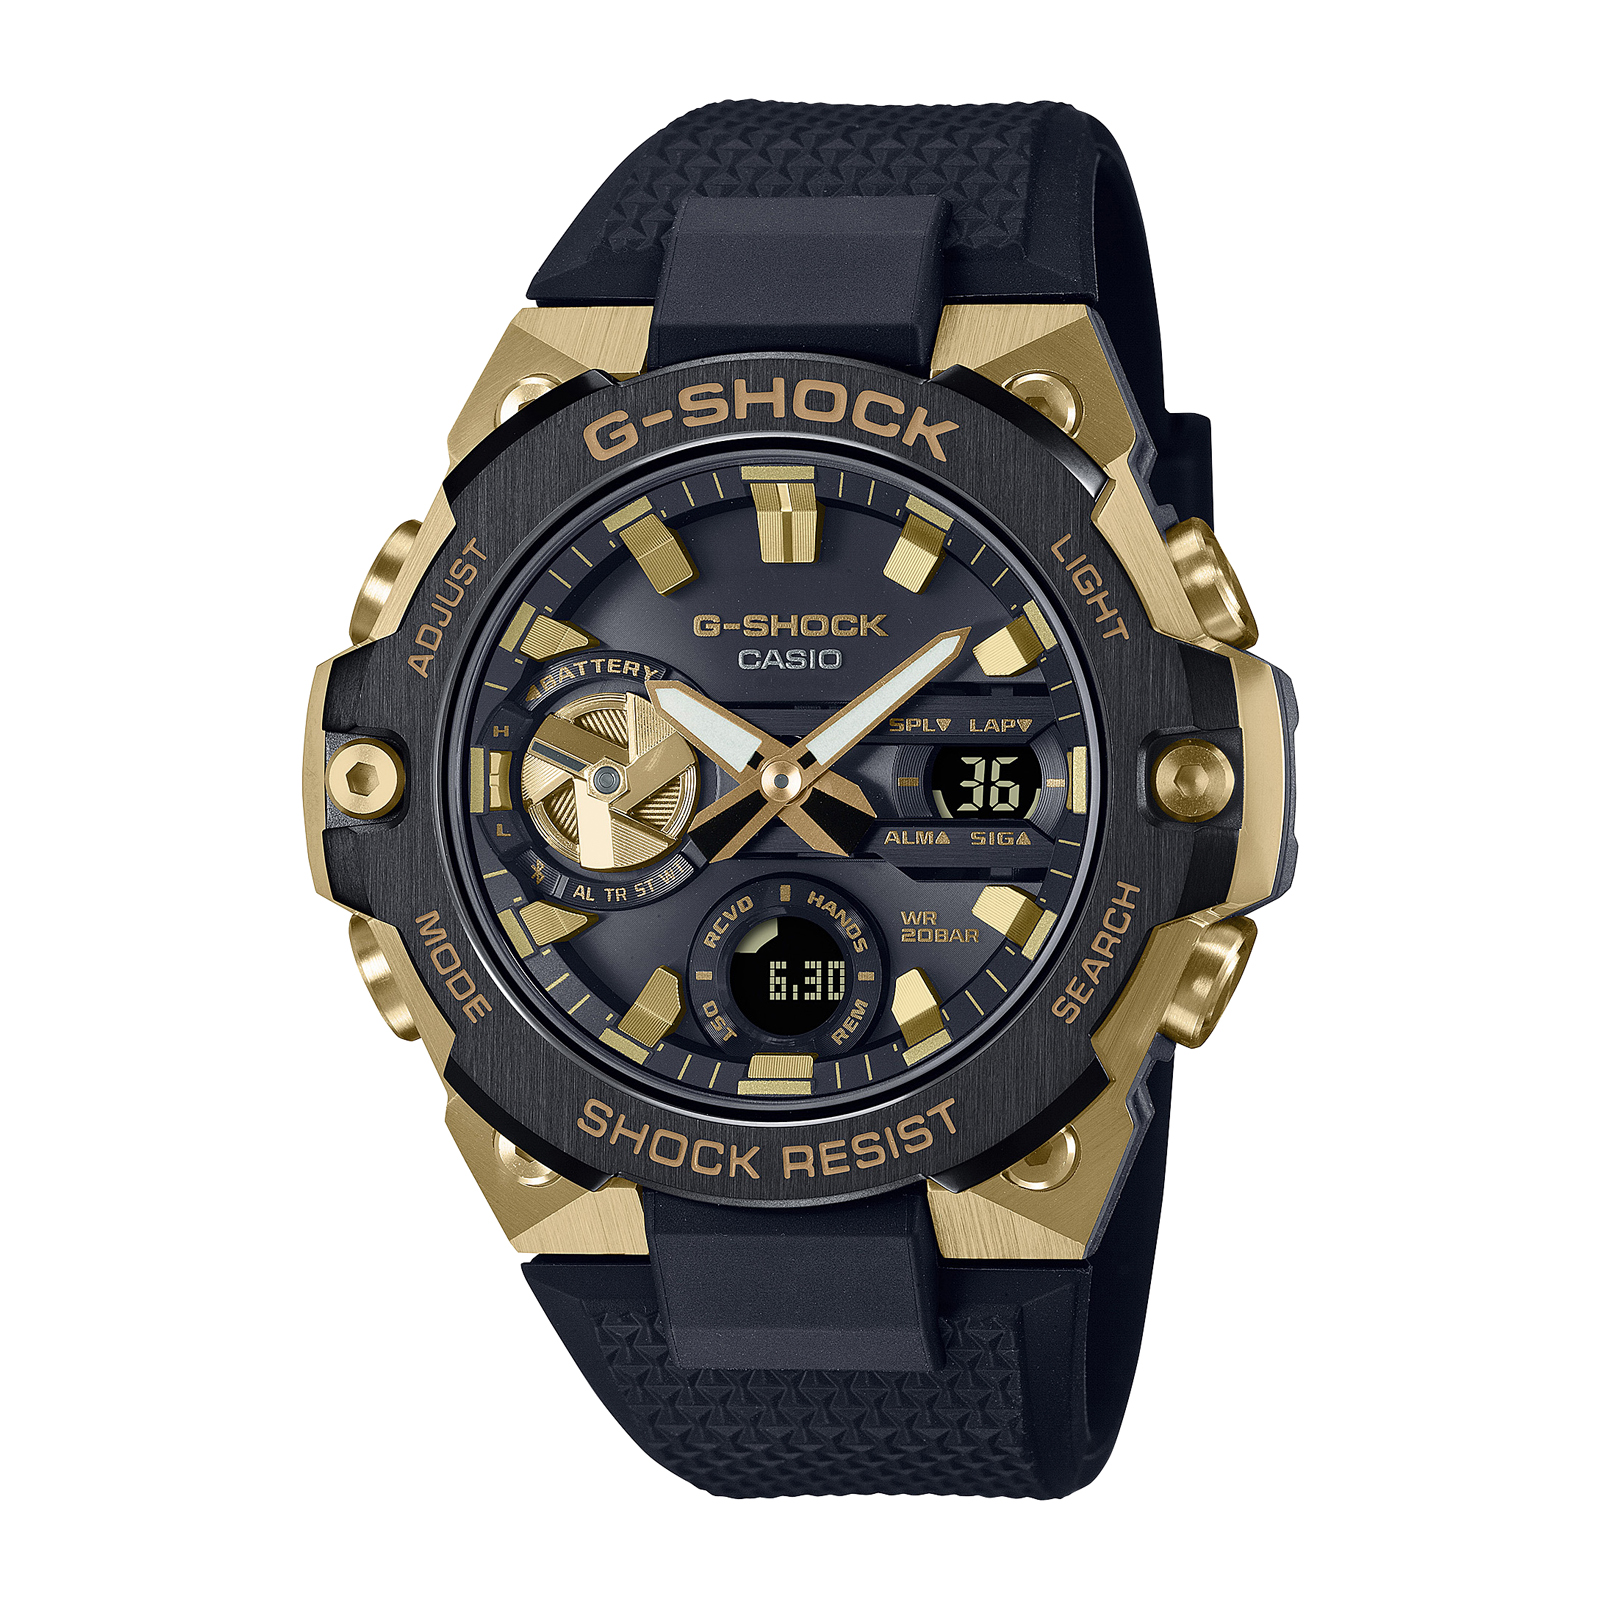 Reloj G-SHOCK GST-B400GB-1A9 Resina/Acero Hombre Dorado